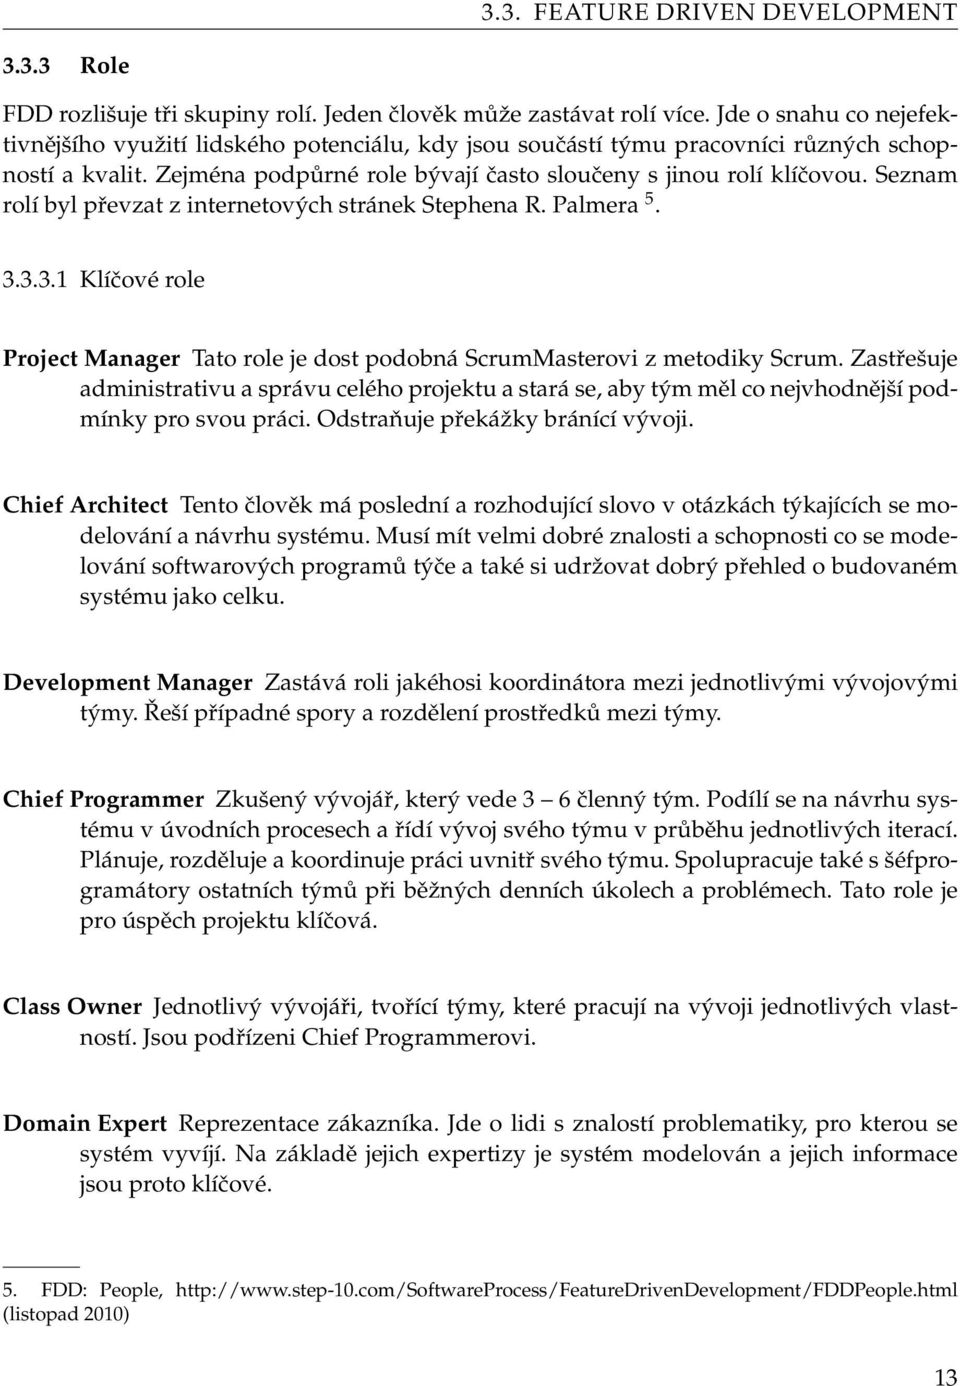 Seznam rolí byl převzat z internetových stránek Stephena R. Palmera 5. 3.3.3.1 Klíčové role Project Manager Tato role je dost podobná ScrumMasterovi z metodiky Scrum.